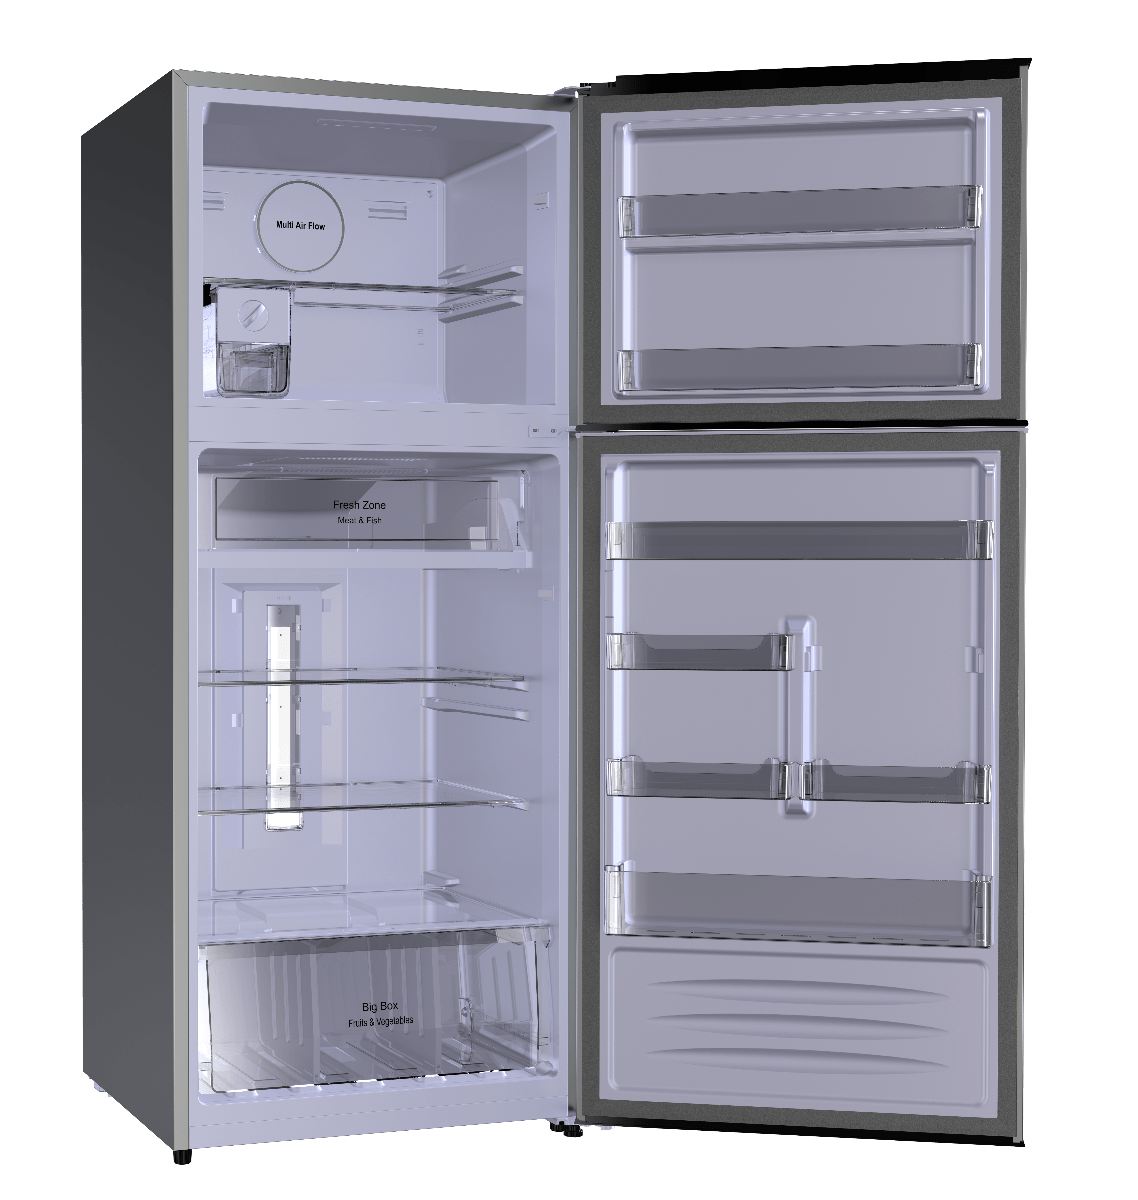 Fresh Refrigerator 471 Liters - Black /FNT-M580 YB